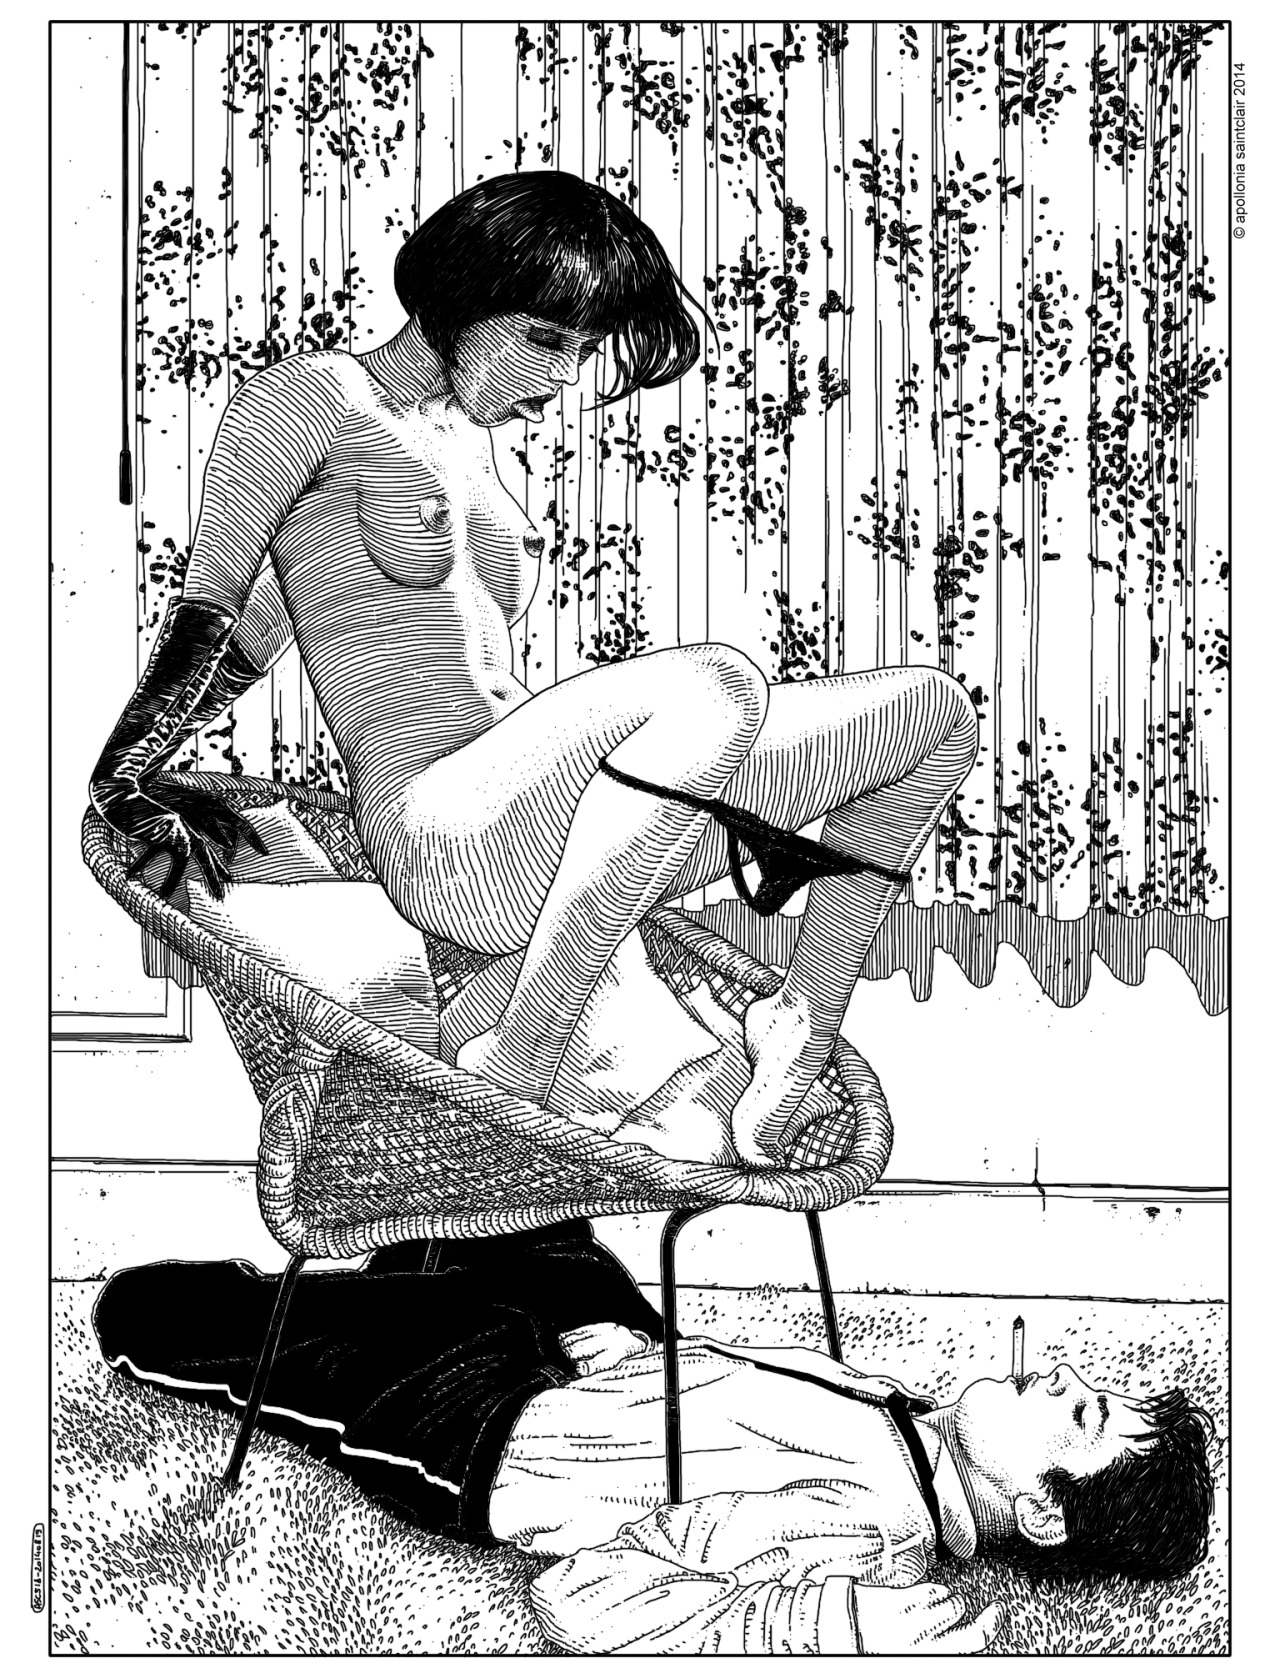 Le illustrazioni erotiche di Apollonia Saintclair | Collater.al